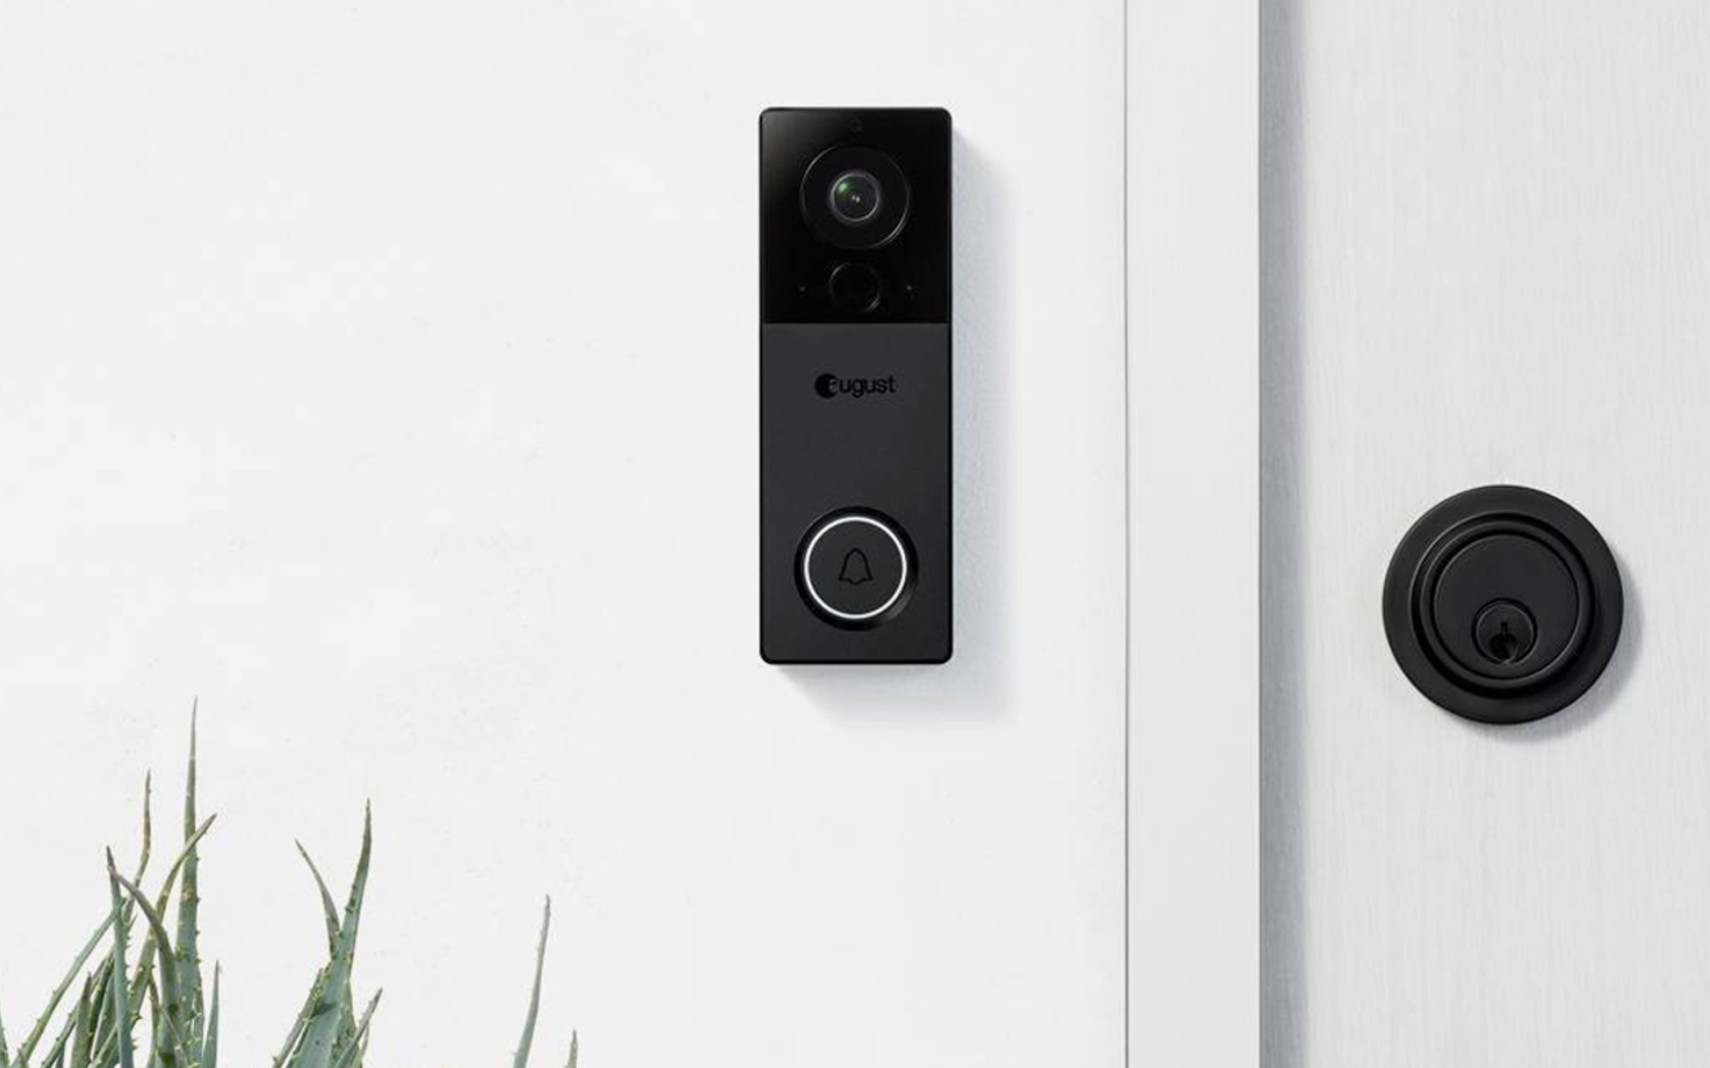 August View Doorbell Camera